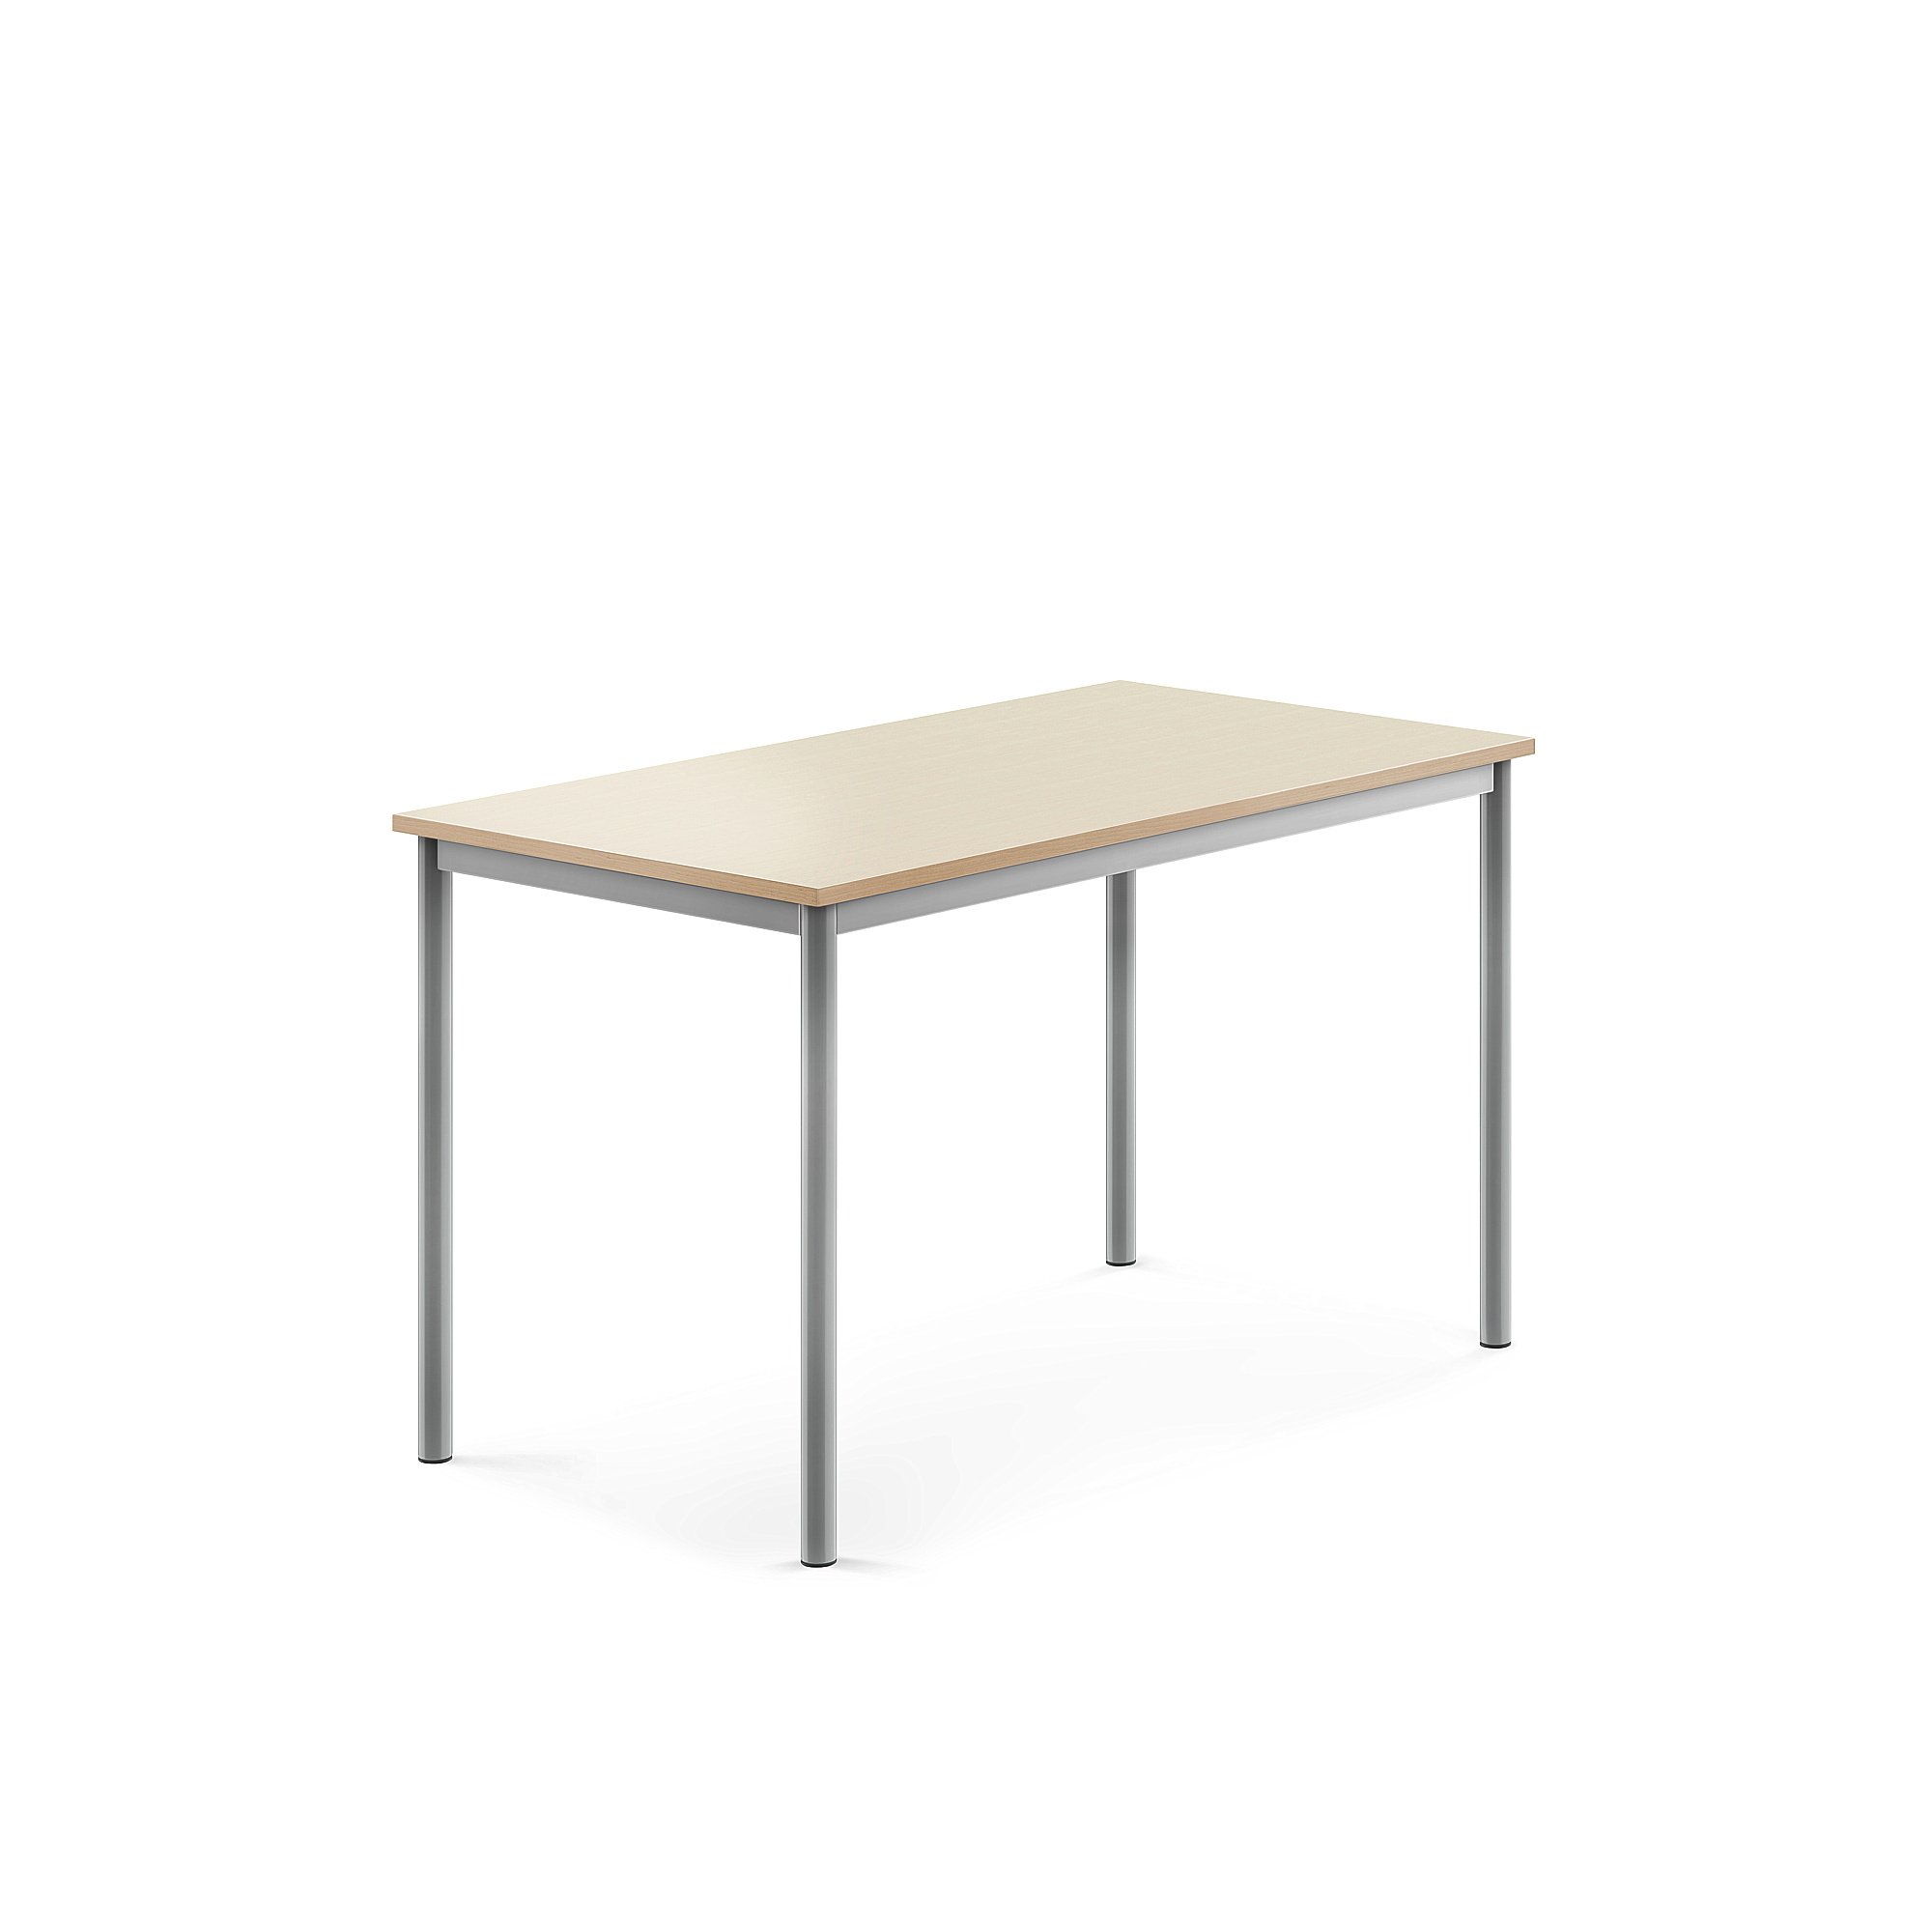 Stůl SONITUS, 1200x700x720 mm, stříbrné nohy, HPL deska tlumící hluk, bříza